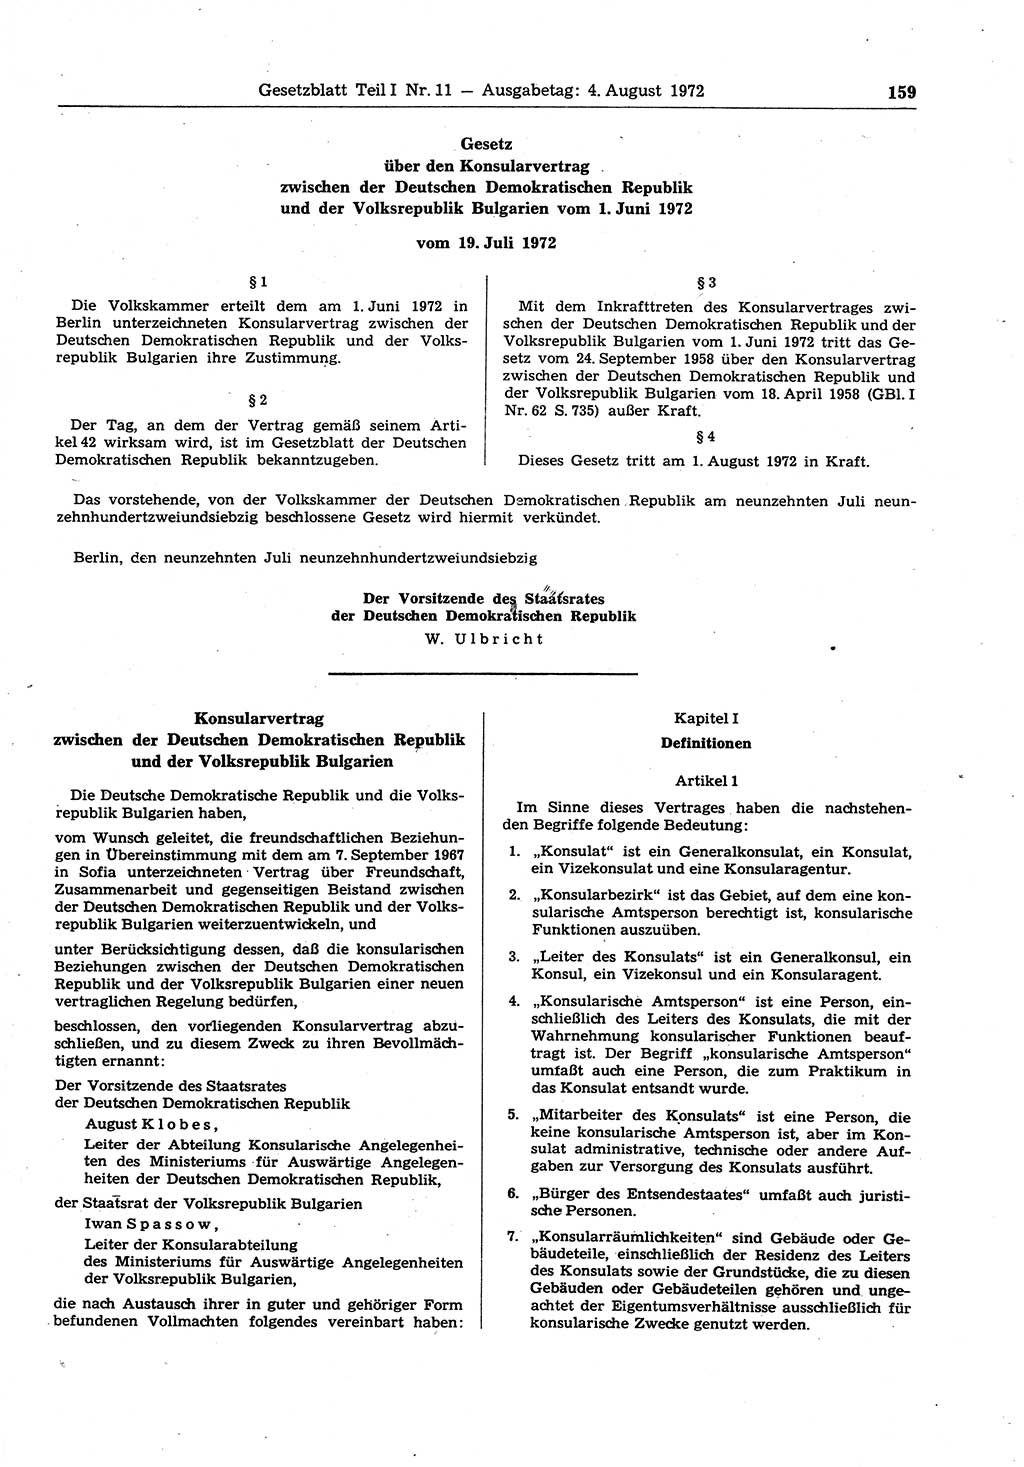 Gesetzblatt (GBl.) der Deutschen Demokratischen Republik (DDR) Teil Ⅰ 1972, Seite 159 (GBl. DDR Ⅰ 1972, S. 159)